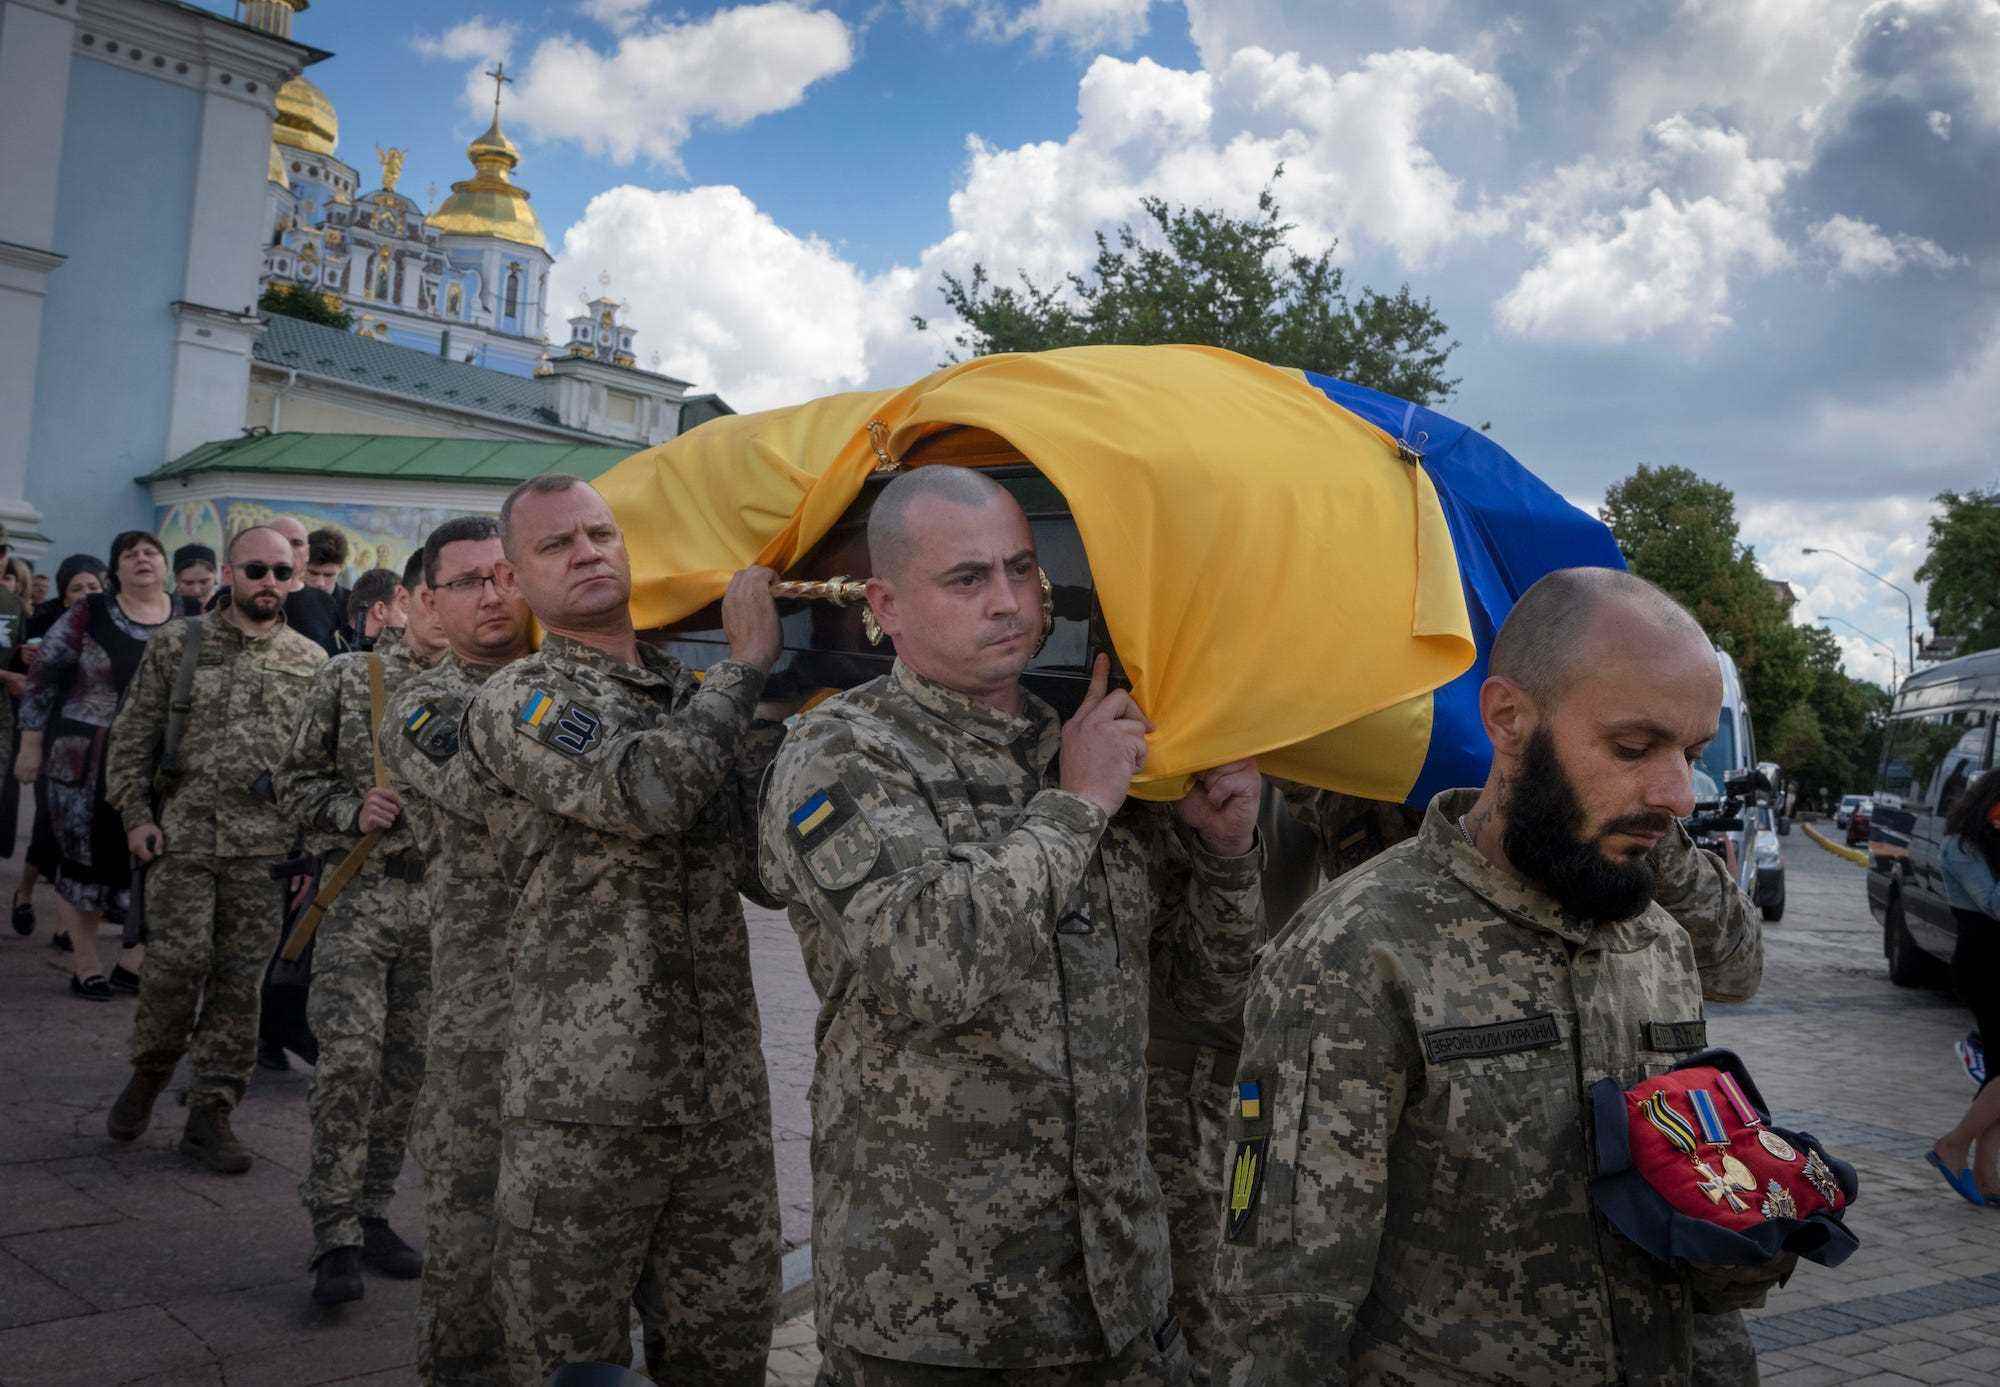 Ukrainische Soldaten in Tarnkleidung tragen einen Sarg, der in eine ukrainische Flagge gehüllt ist